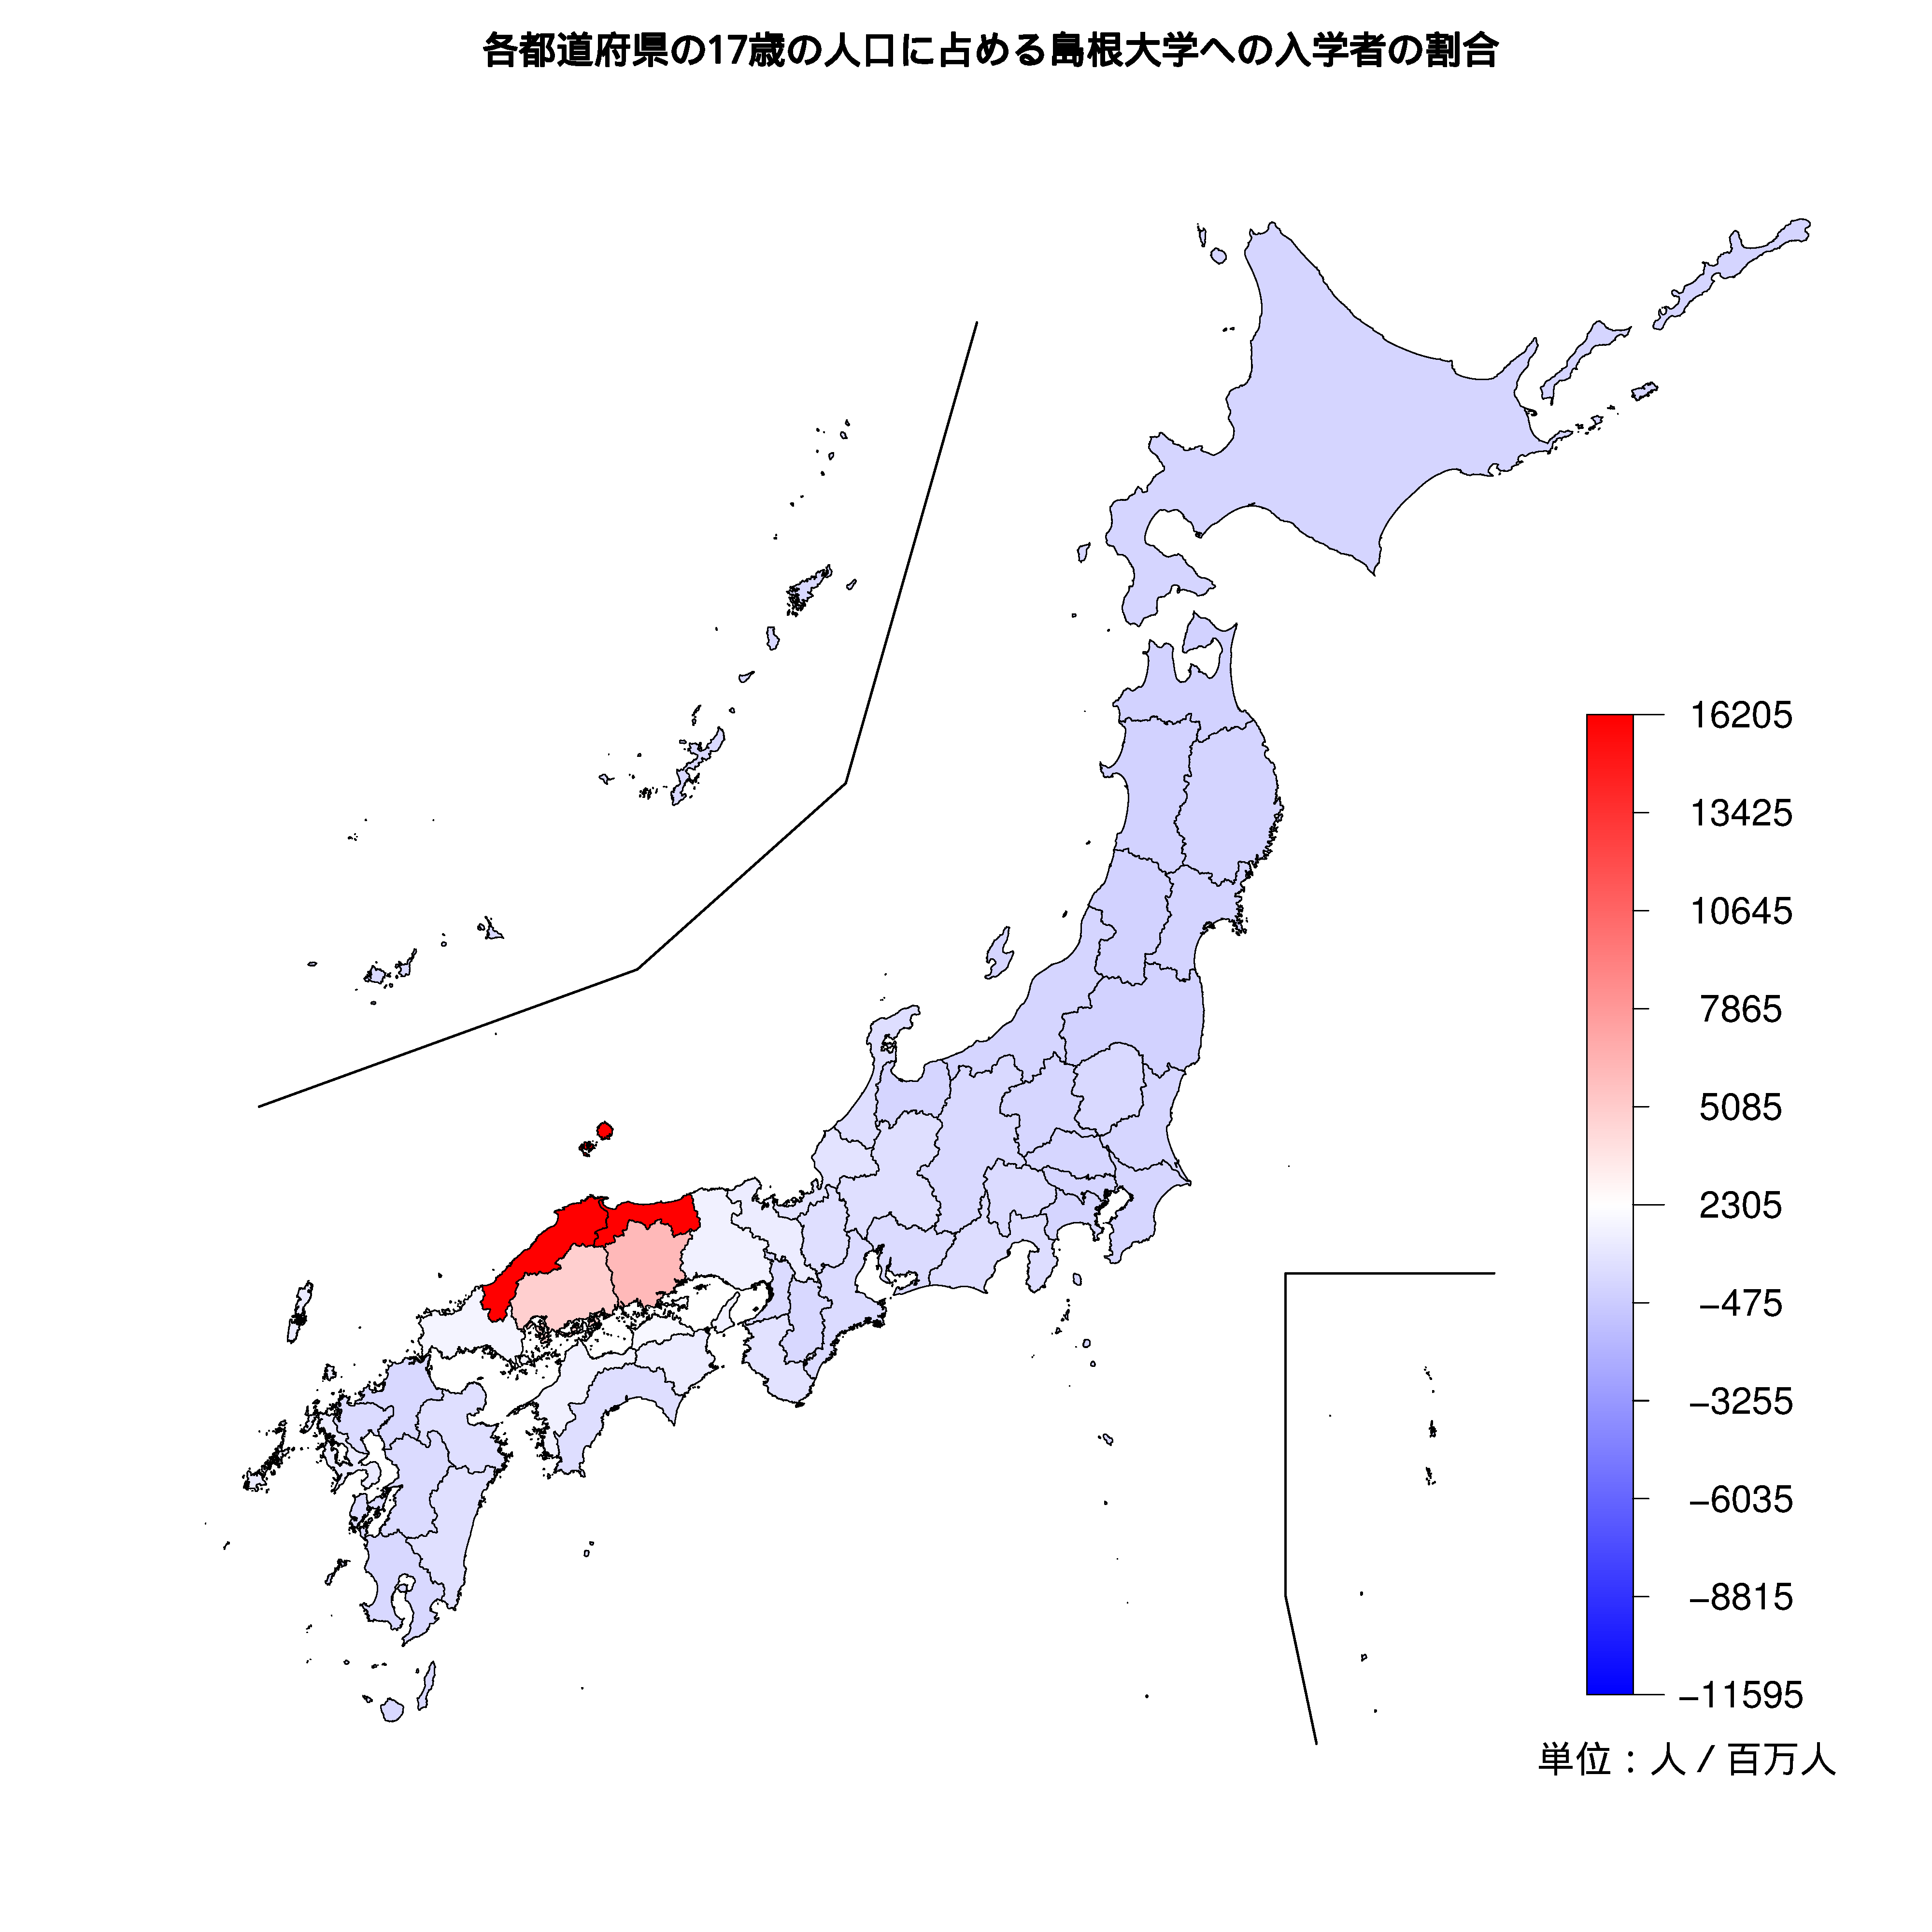 島根大学への入学者が多い都道府県の色分け地図